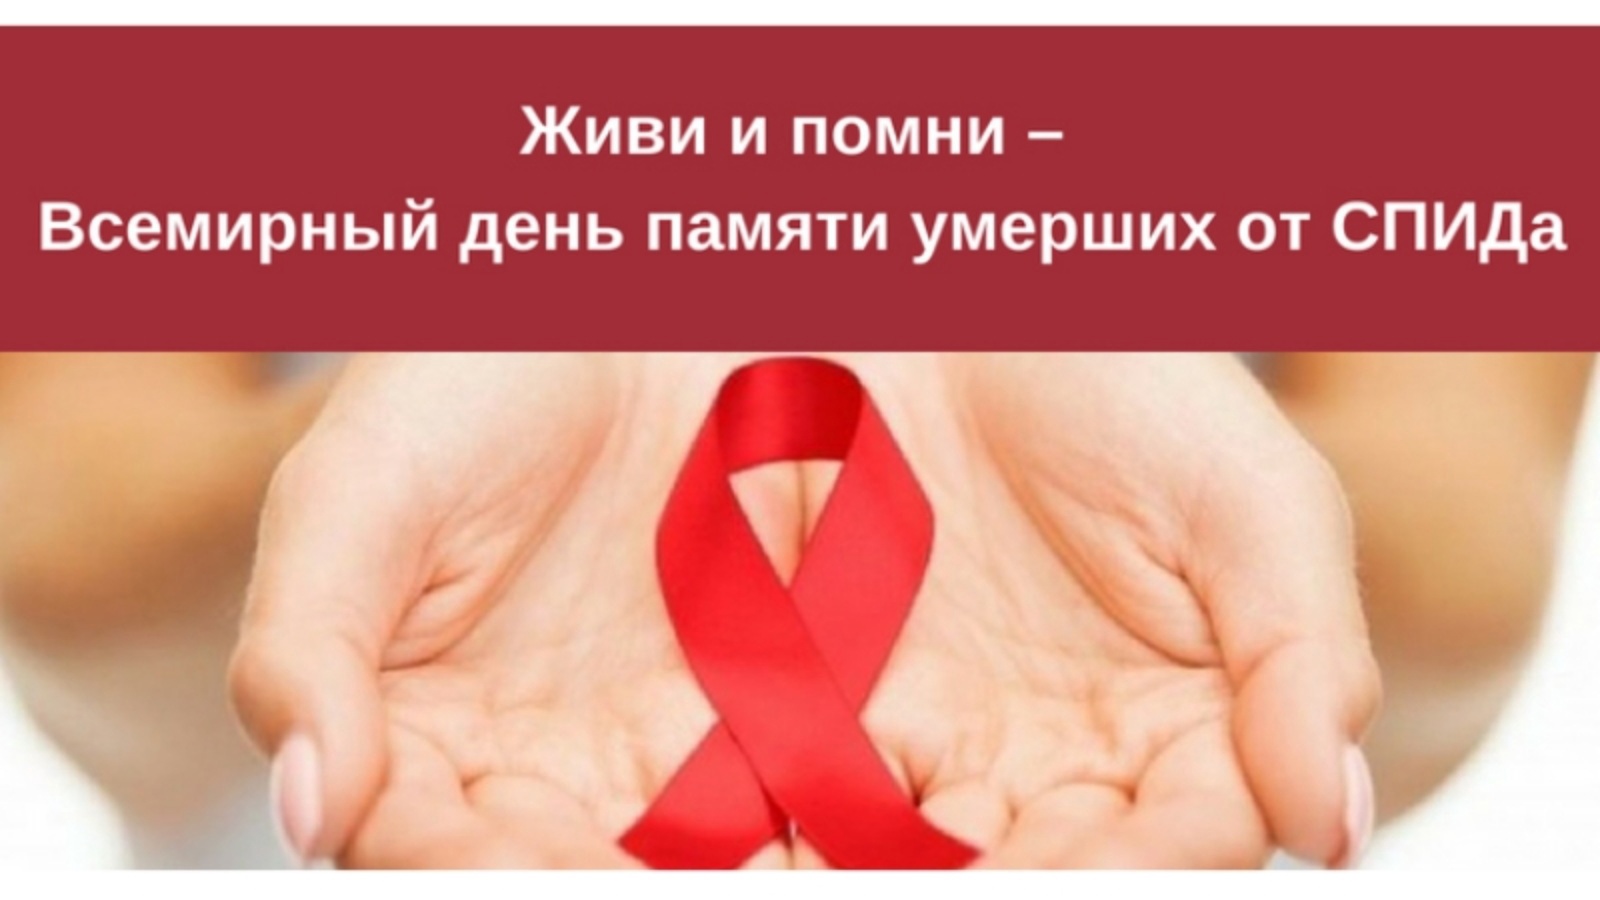 19 мая - Всемирный День памяти людей, умерших от СПИДа.